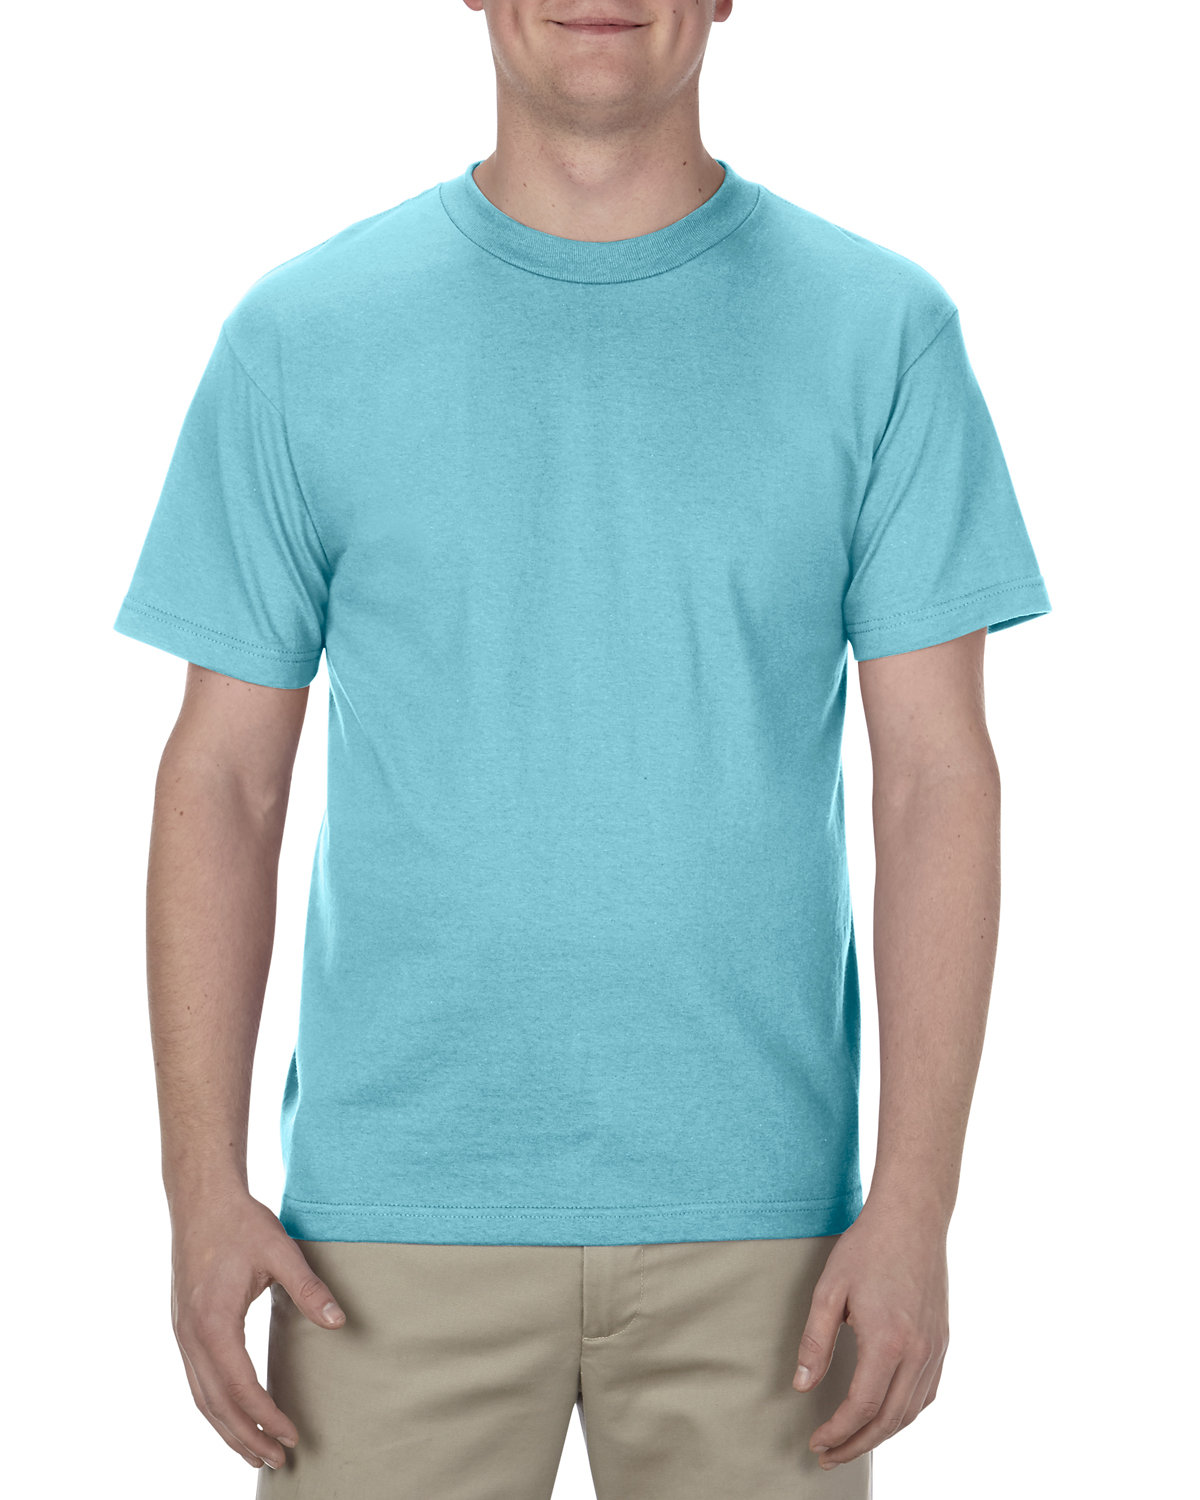 Alstyle AL1301, Adult 6.0 oz., 100% Cotton T-Shirt